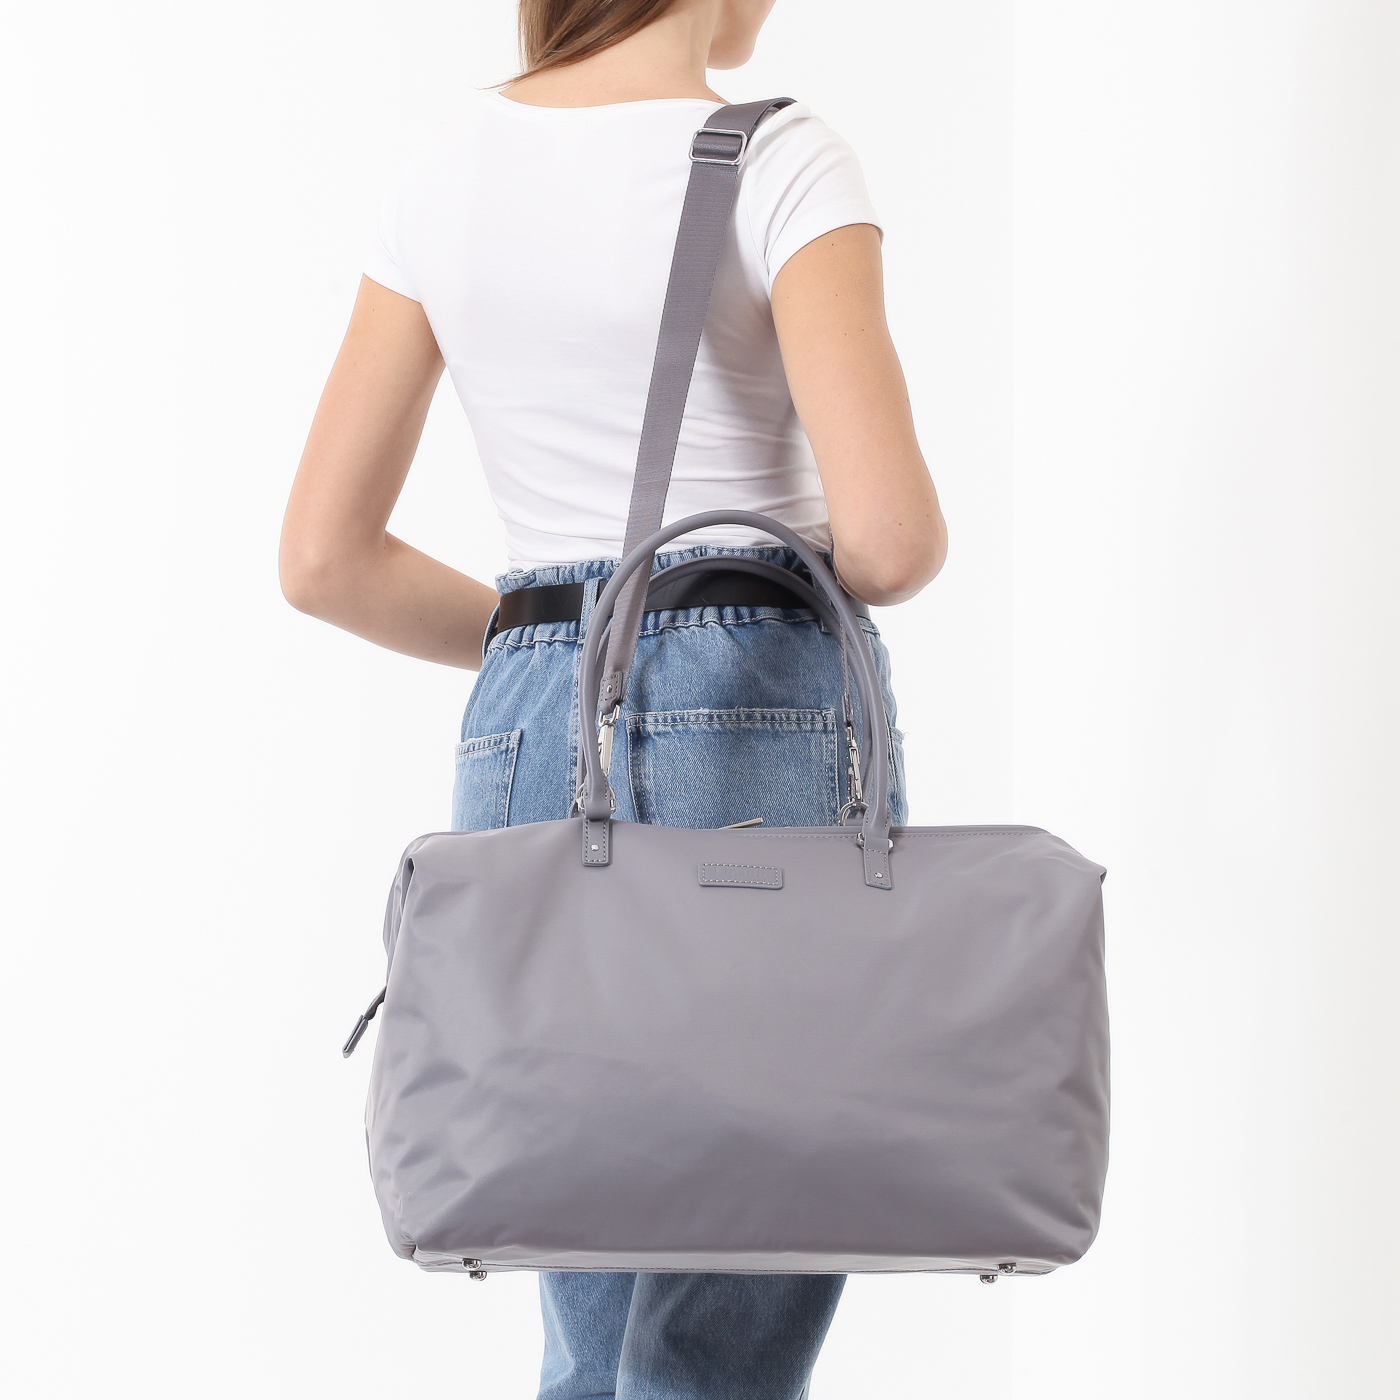 Дорожная сумка со съемным плечевым ремнем Lipault Lady Plume